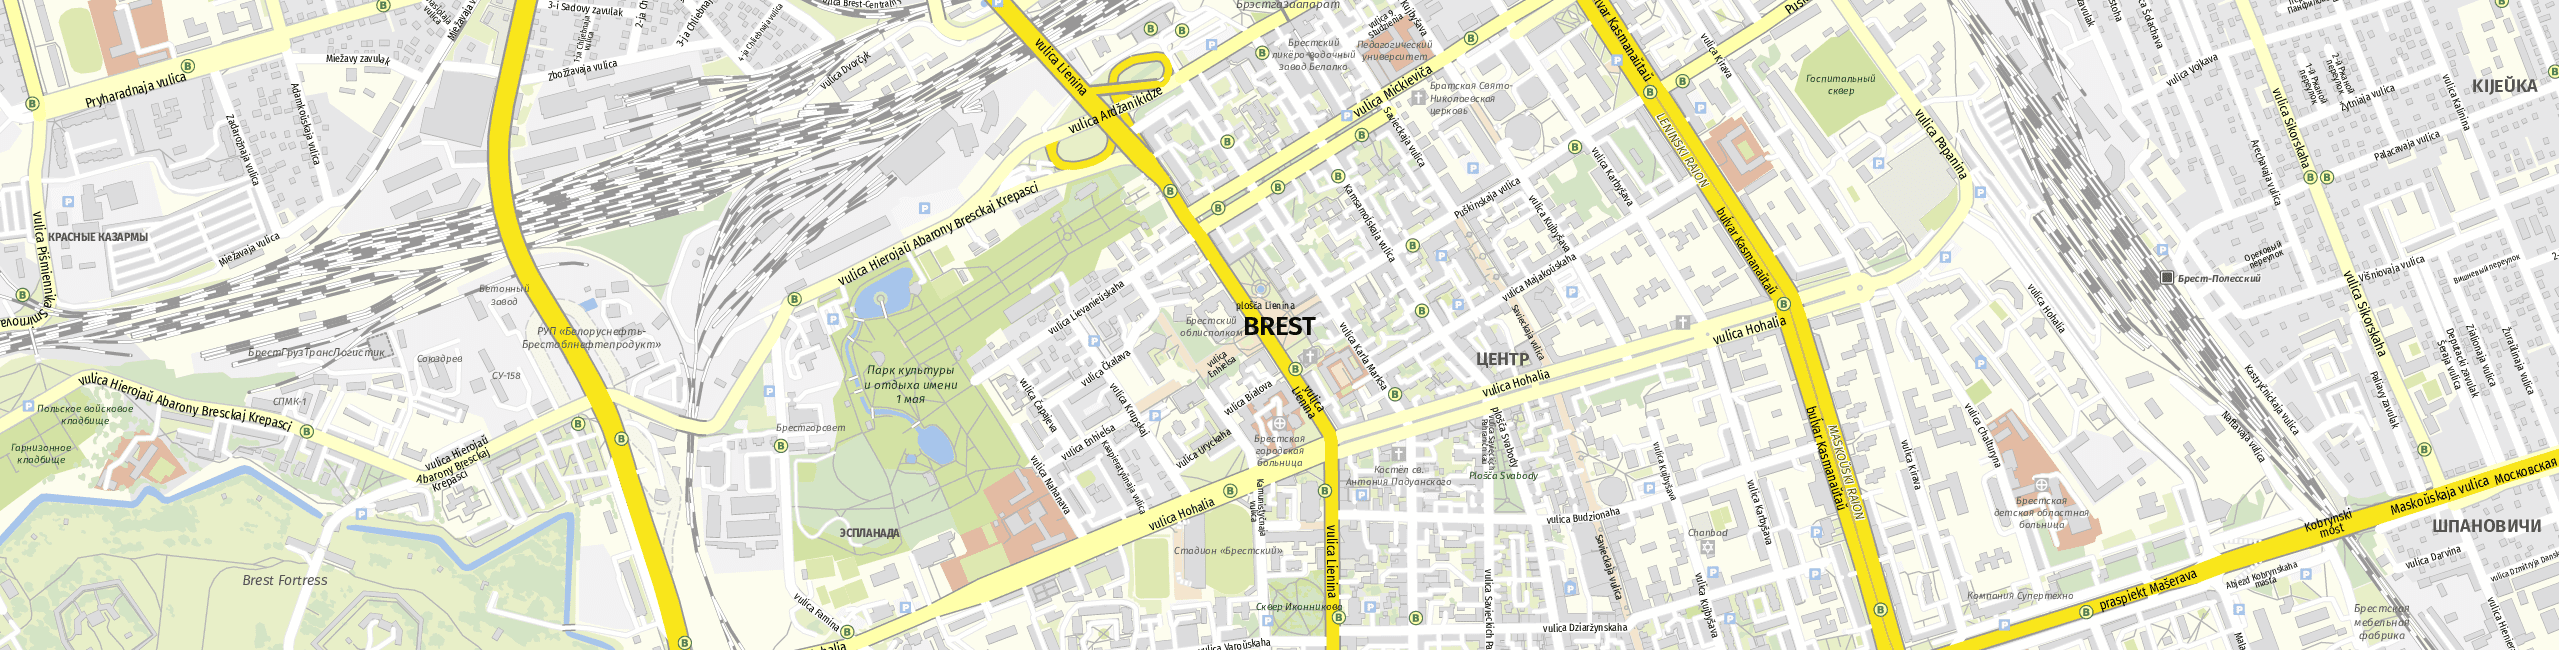 Stadtplan Brest zum Downloaden.